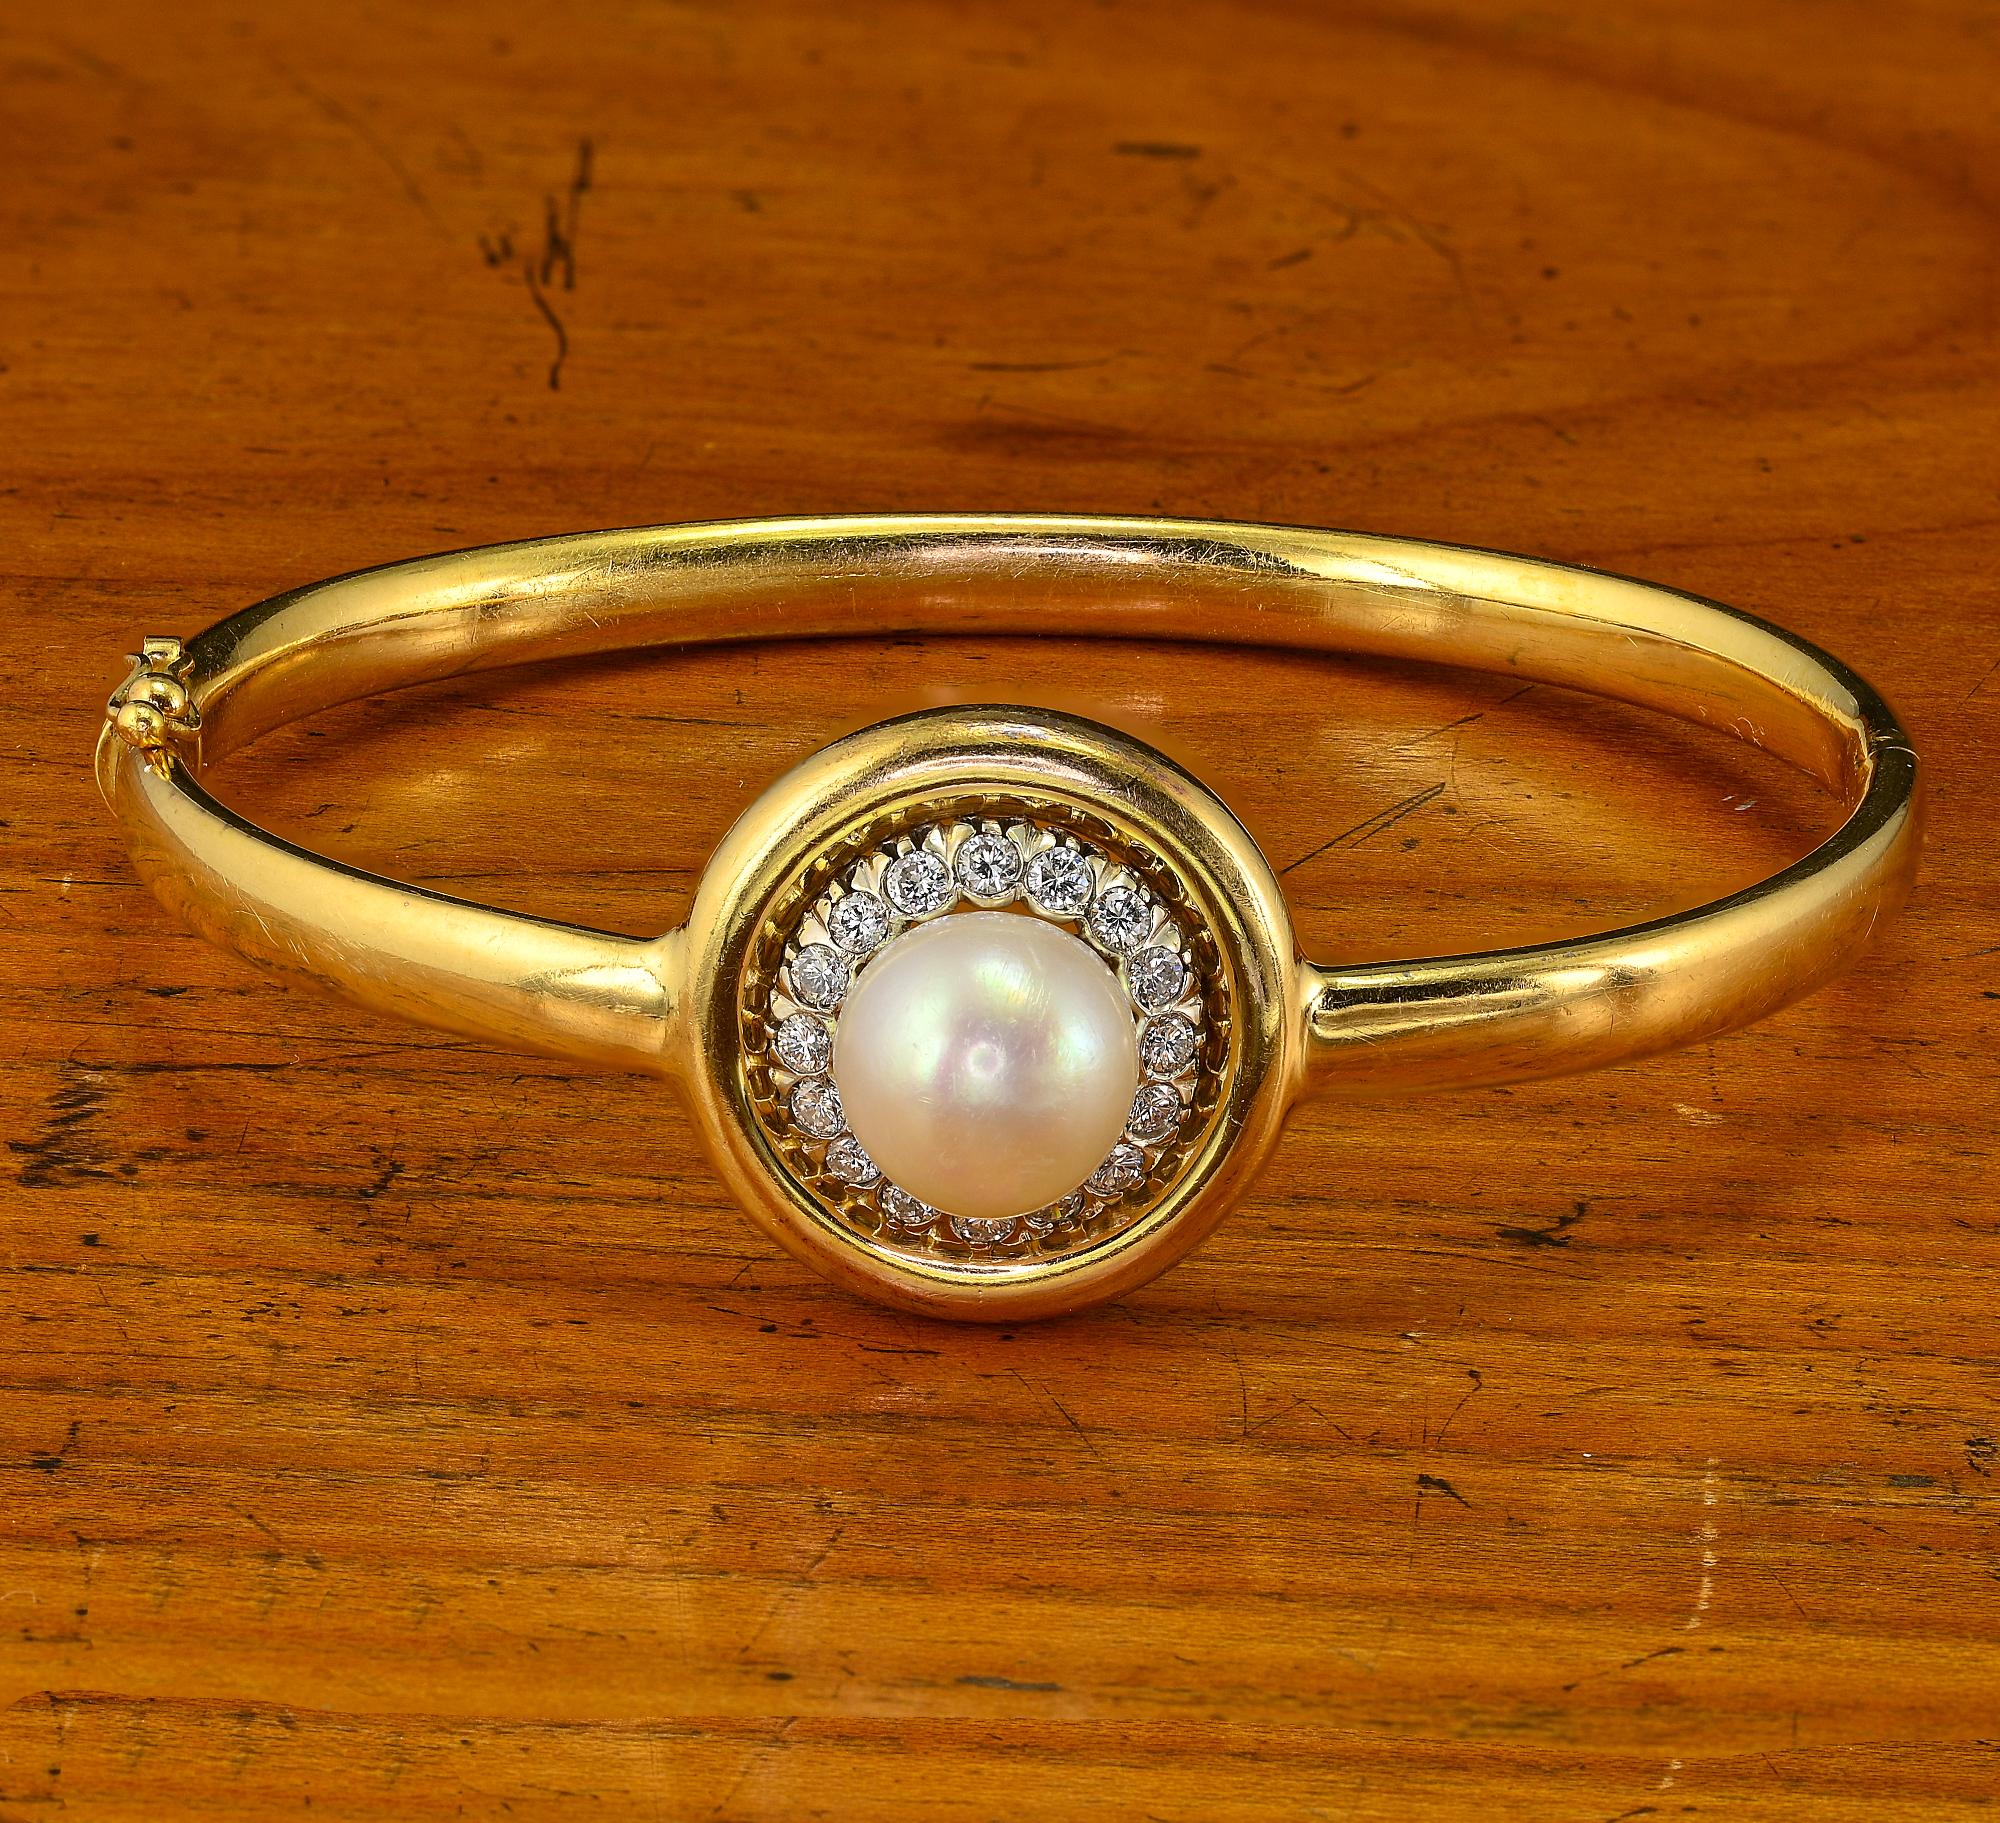 Superbe bracelet Art Deco au design unique et robuste, fabriqué individuellement à la main 18 KT, 1930 circa
L'impact visuel efficace est donné par le cercle central serti d'une grande perle des mers du Sud de 10 mm. entourée de diamants, environ